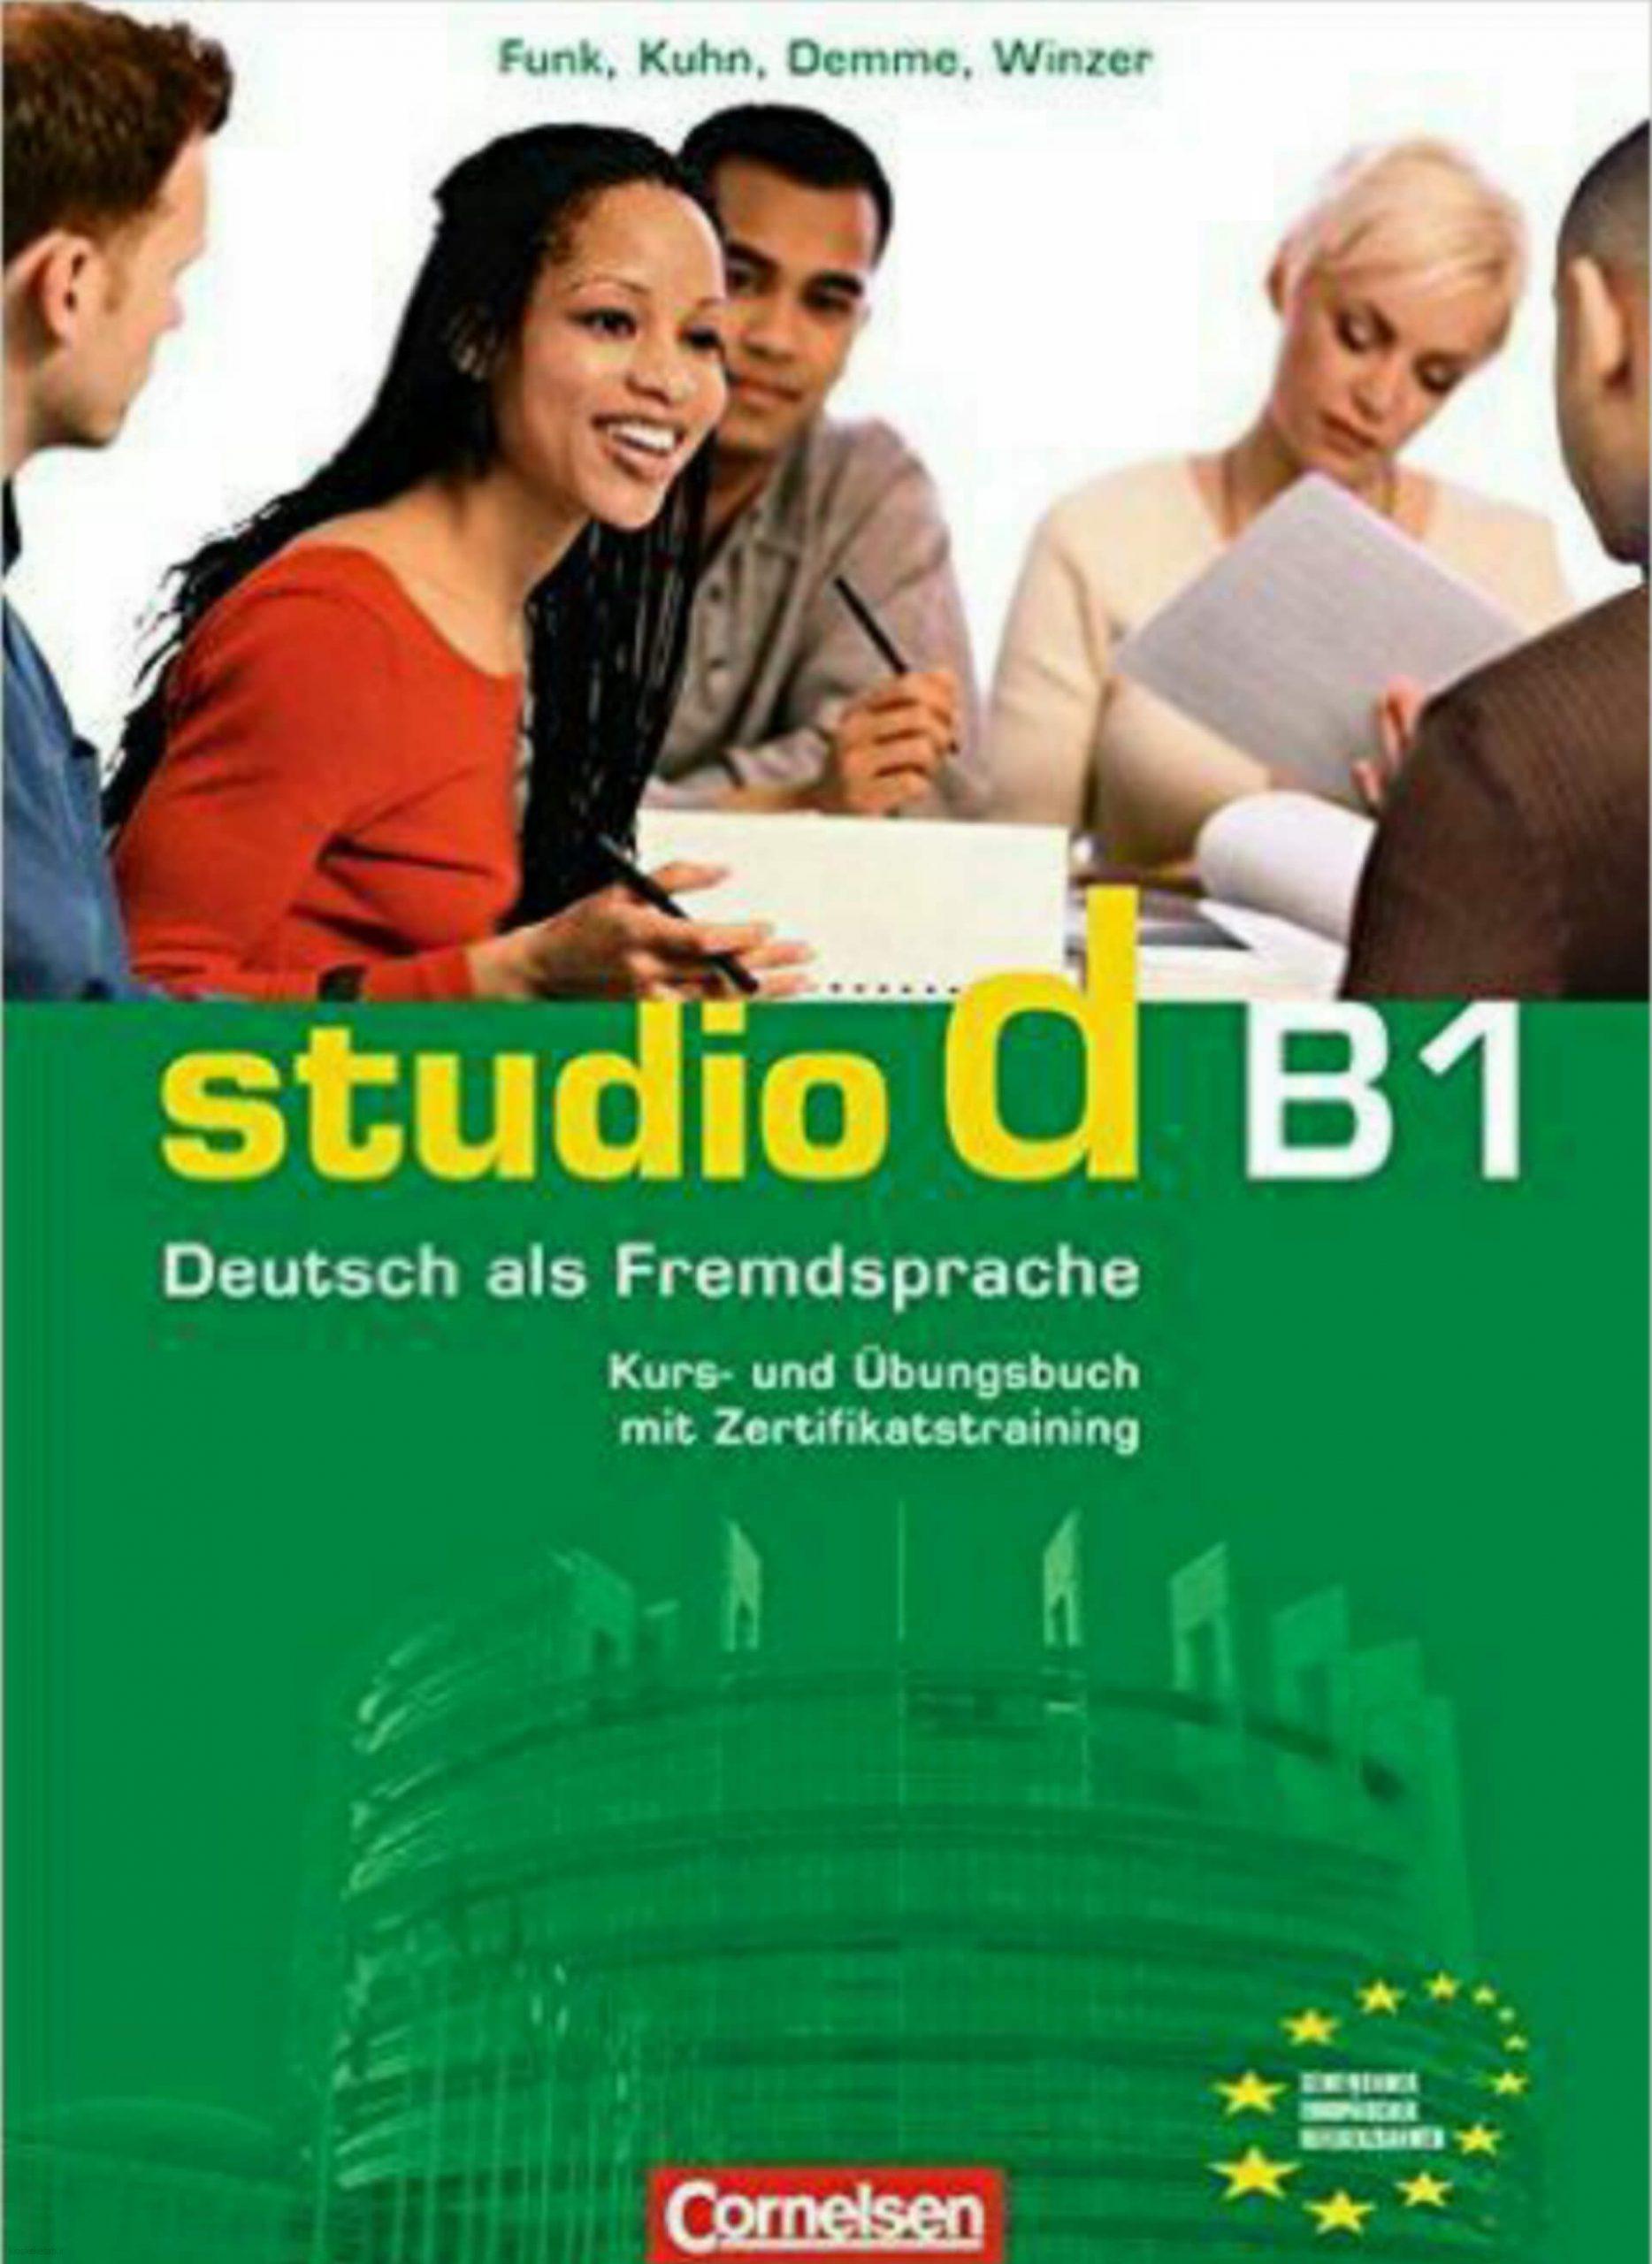 دانلود کتاب آلمانیStudio d B1